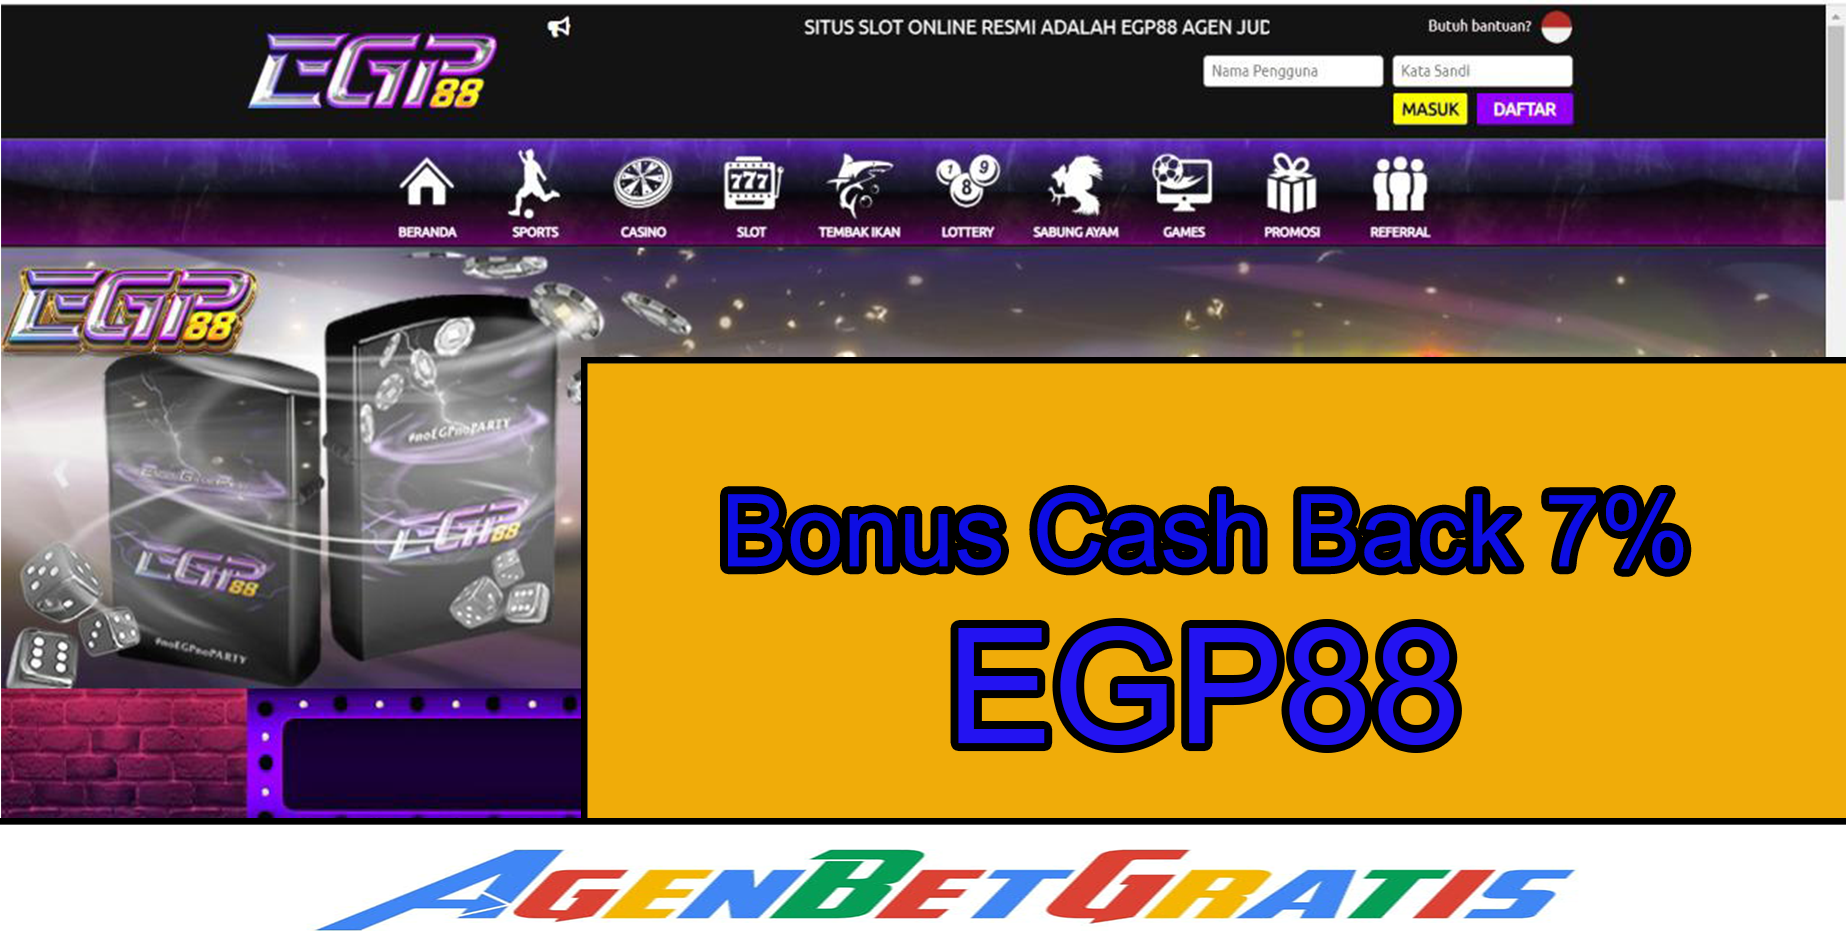 EGP88 - Bonus Cash Back 7%